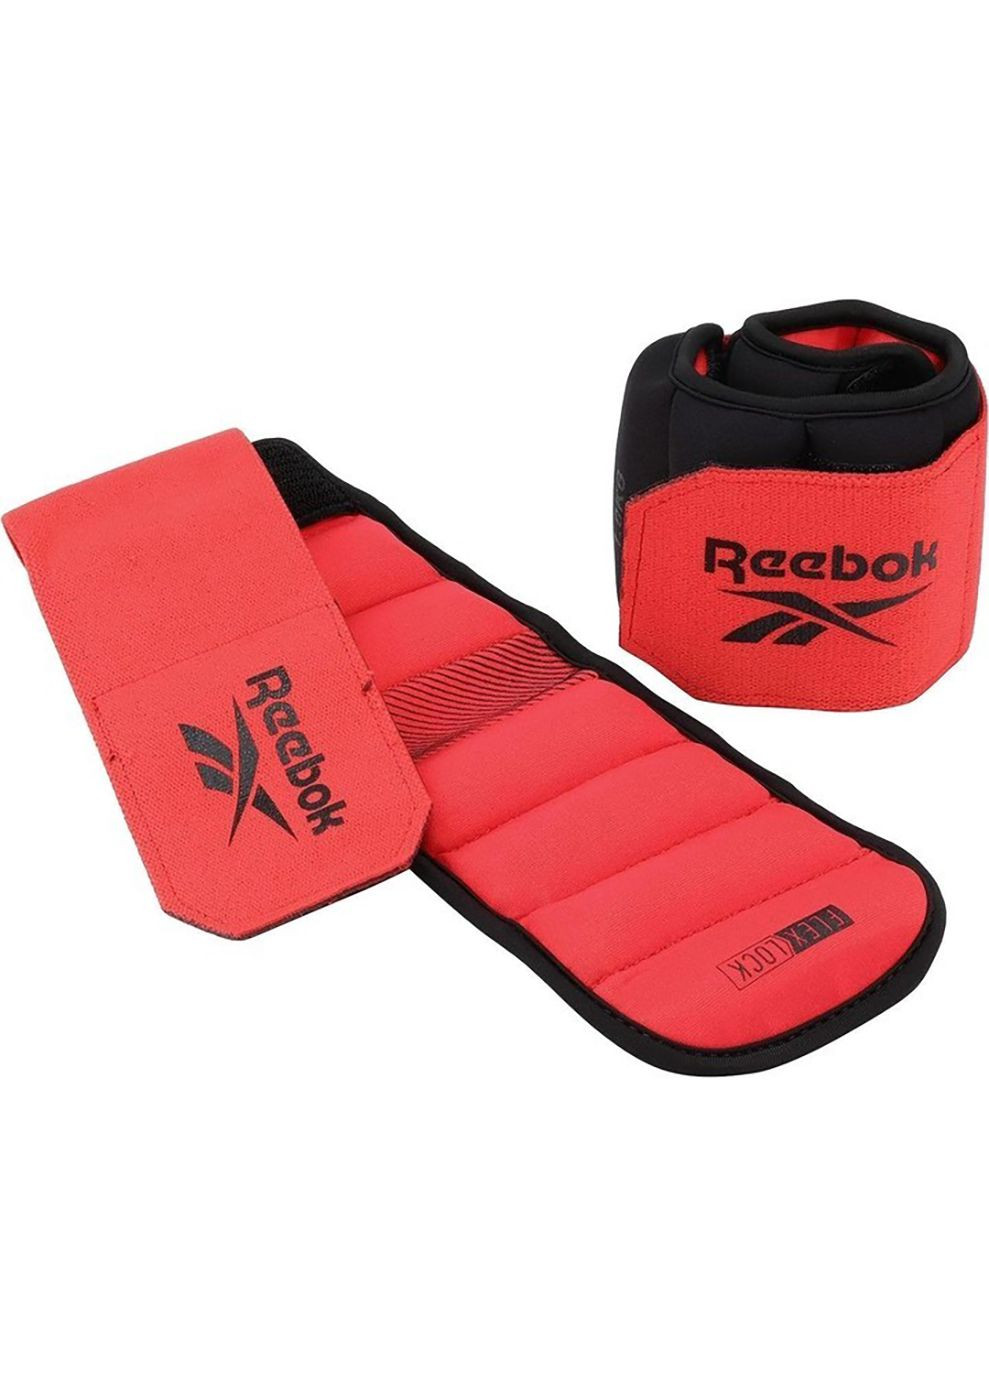 Утяжелители щиколотки Flexlock Ankle Weights черный, красный Уни 0.5 кг Reebok (268747524)